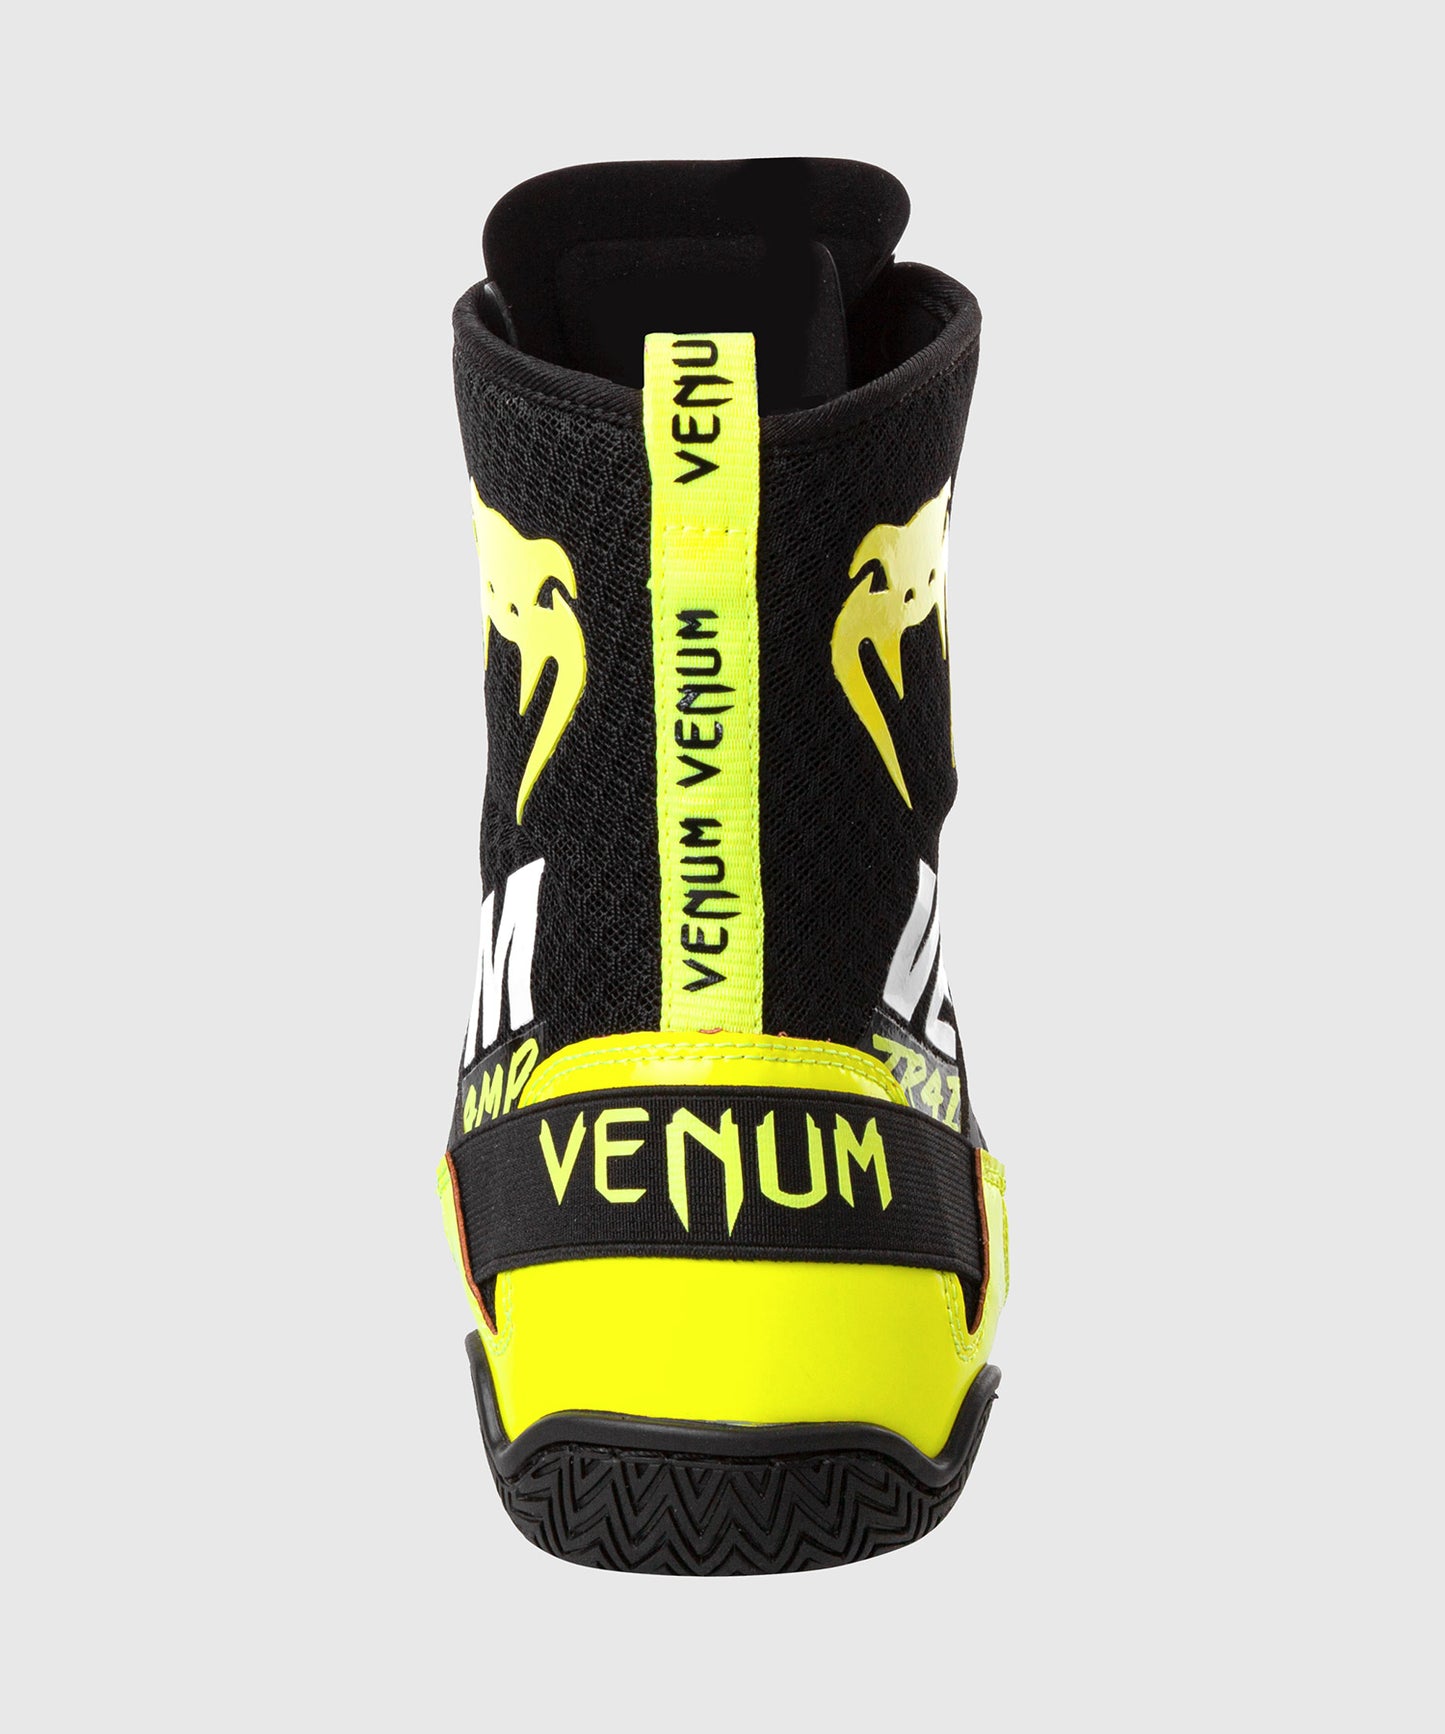 Scarpe da Pugilato Elite VTC 2 Edition Venum - Nero/Giallo neo